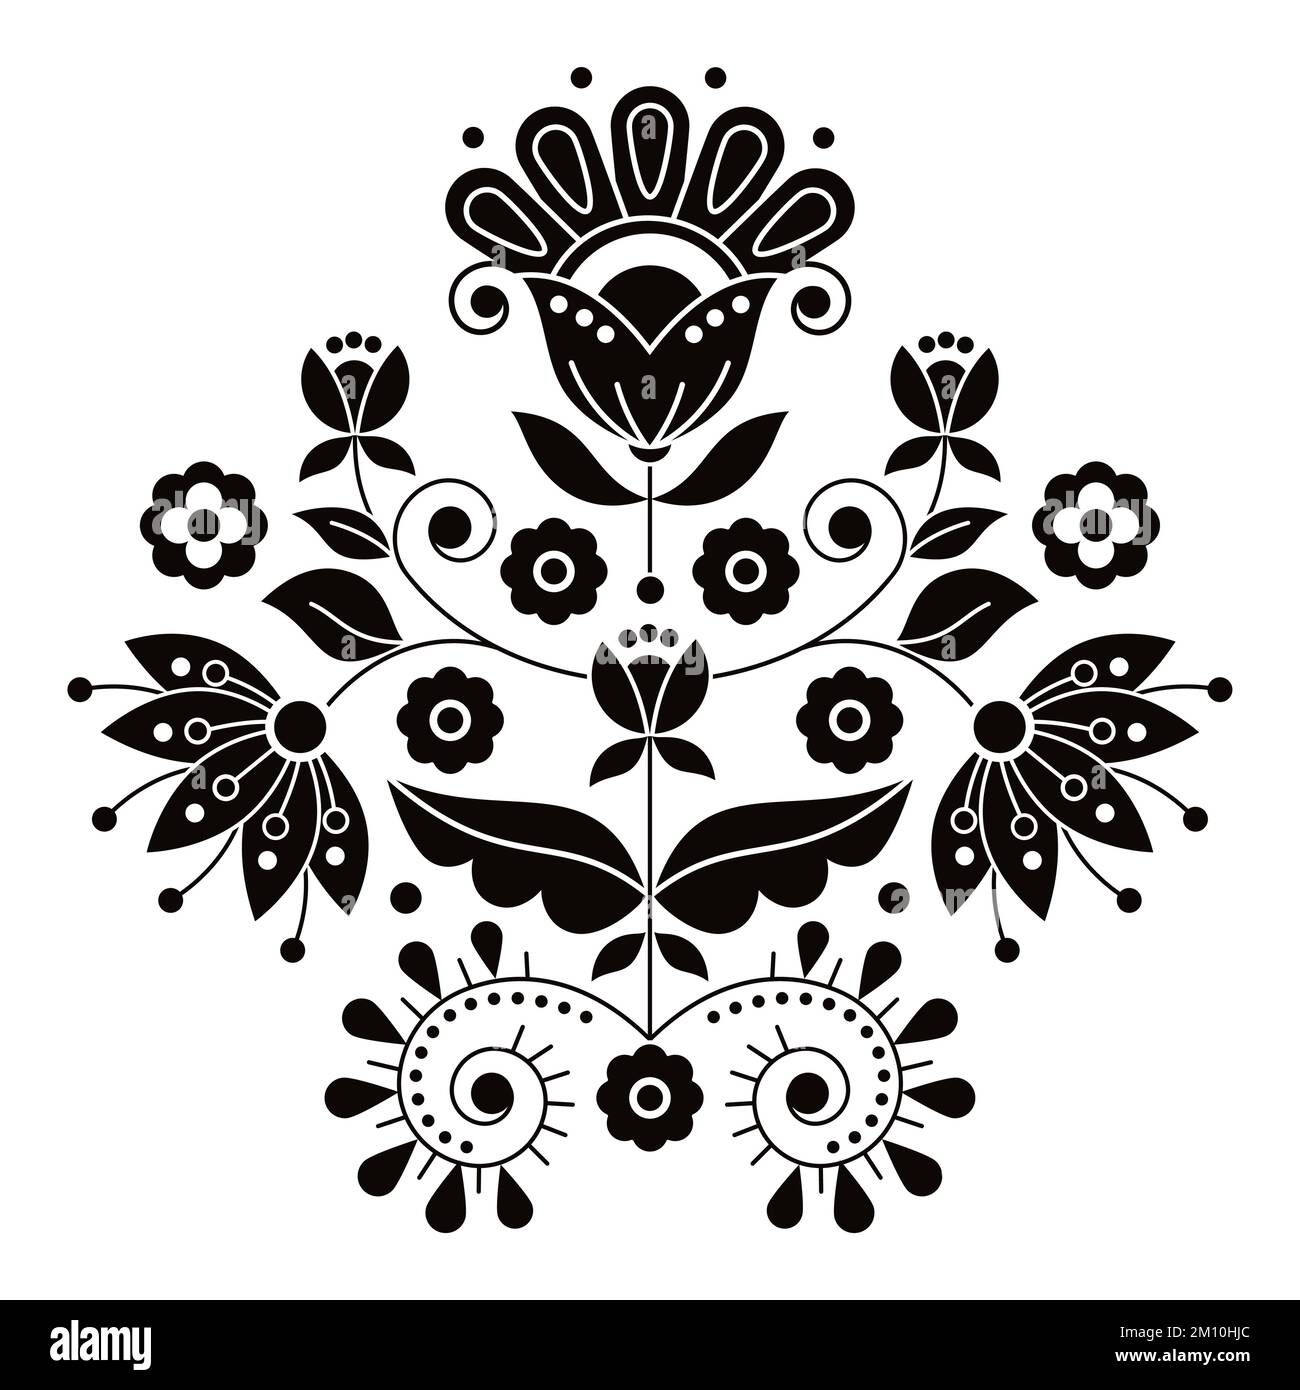 Skandinavisches niedliches Folk Art Vektor-Design, inspiriert von traditionellen Stickereien aus Schweden, Retro-Dekoration mit Blumen, Wirbeln und Blättern mot Stock Vektor